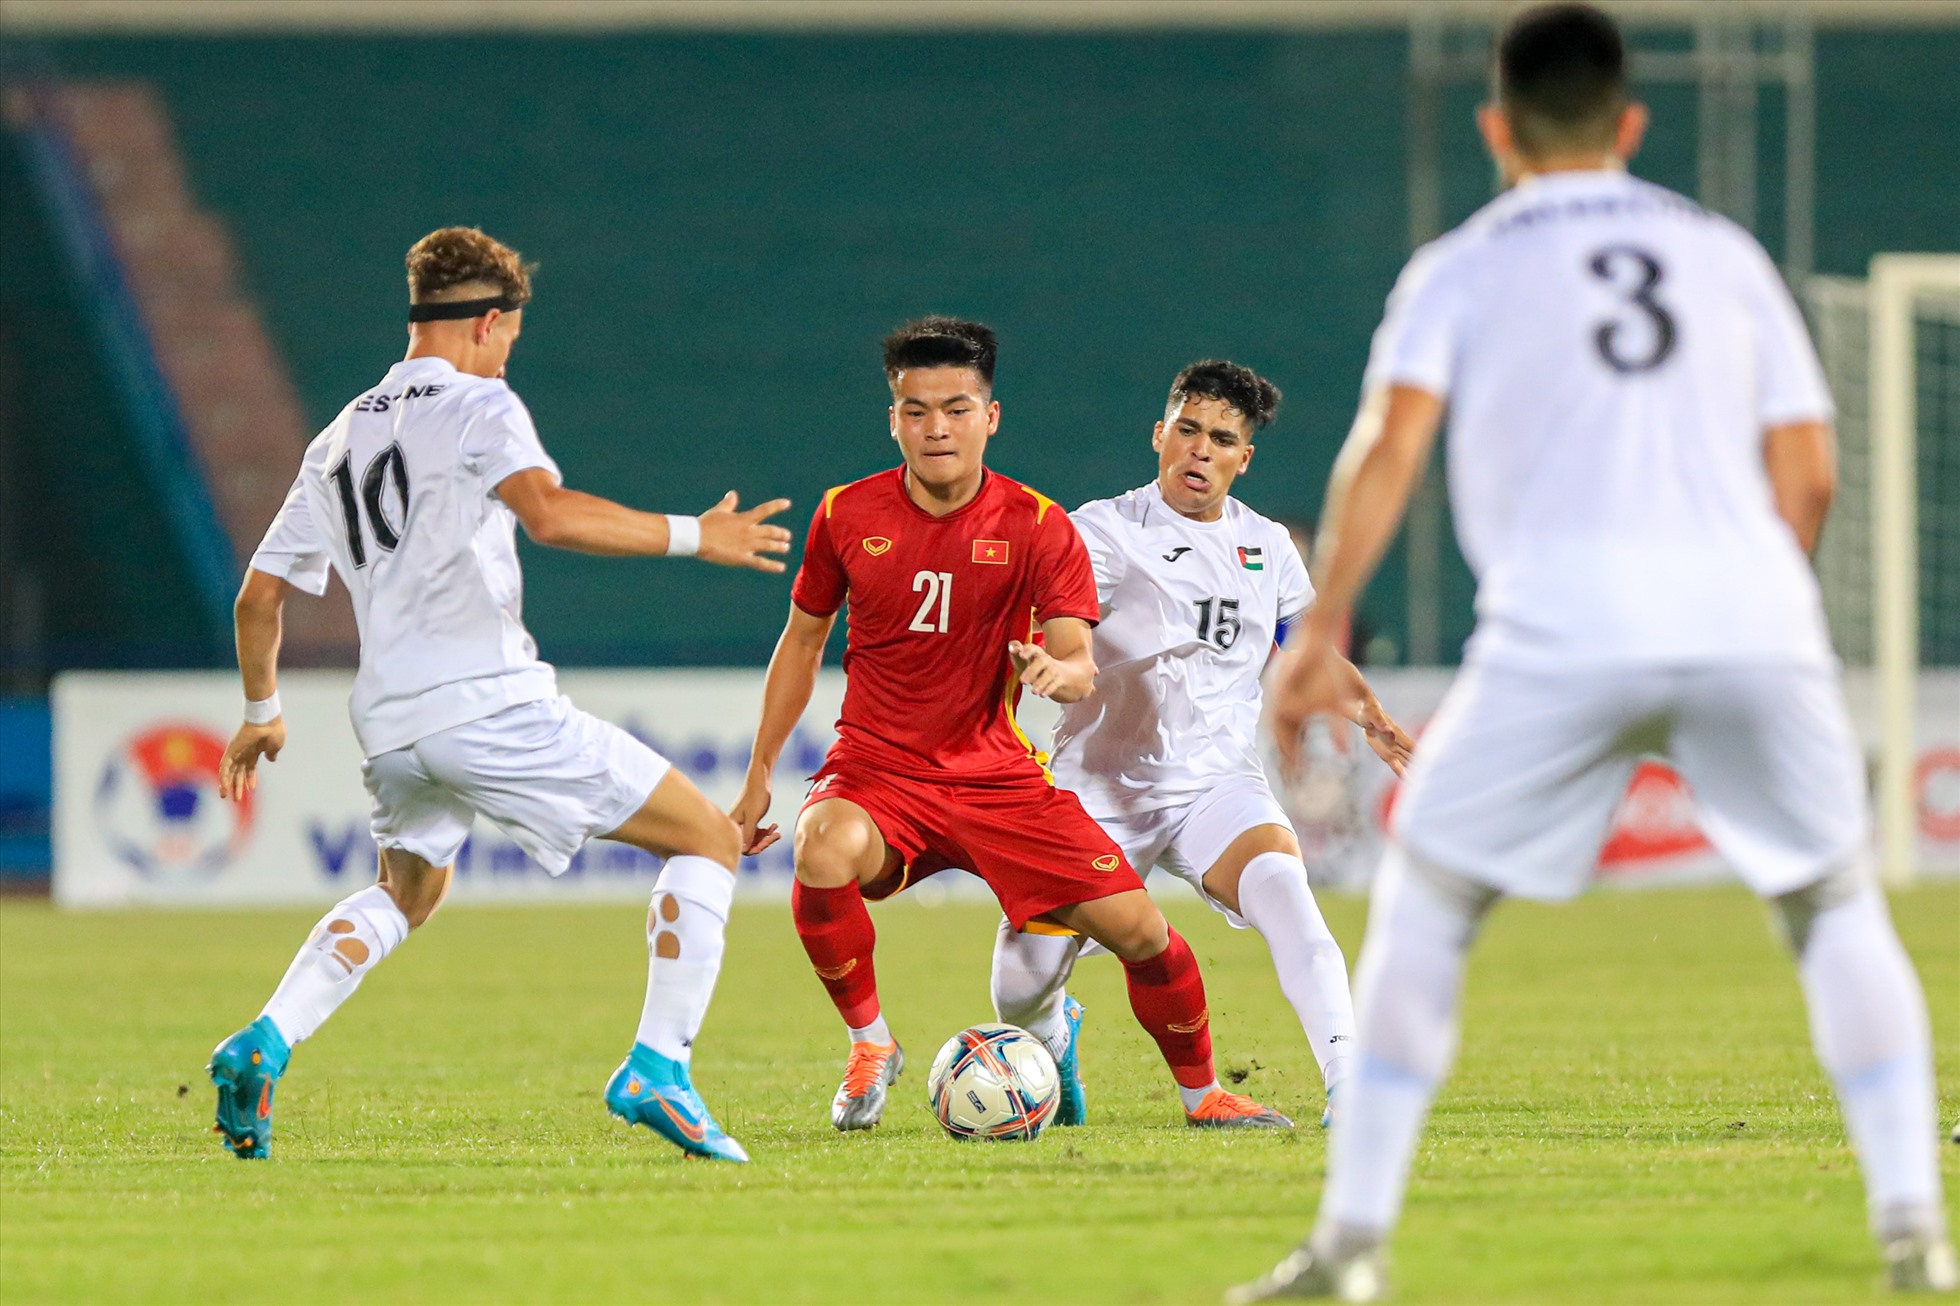 Trận đấu giao hữu giữa U20 Việt Nam và U20 Palestine diễn ra trên sân Việt Trì tối nay (3.9) bắt đầu với tốc độ khá cao ở những phút đầu trận đấu.